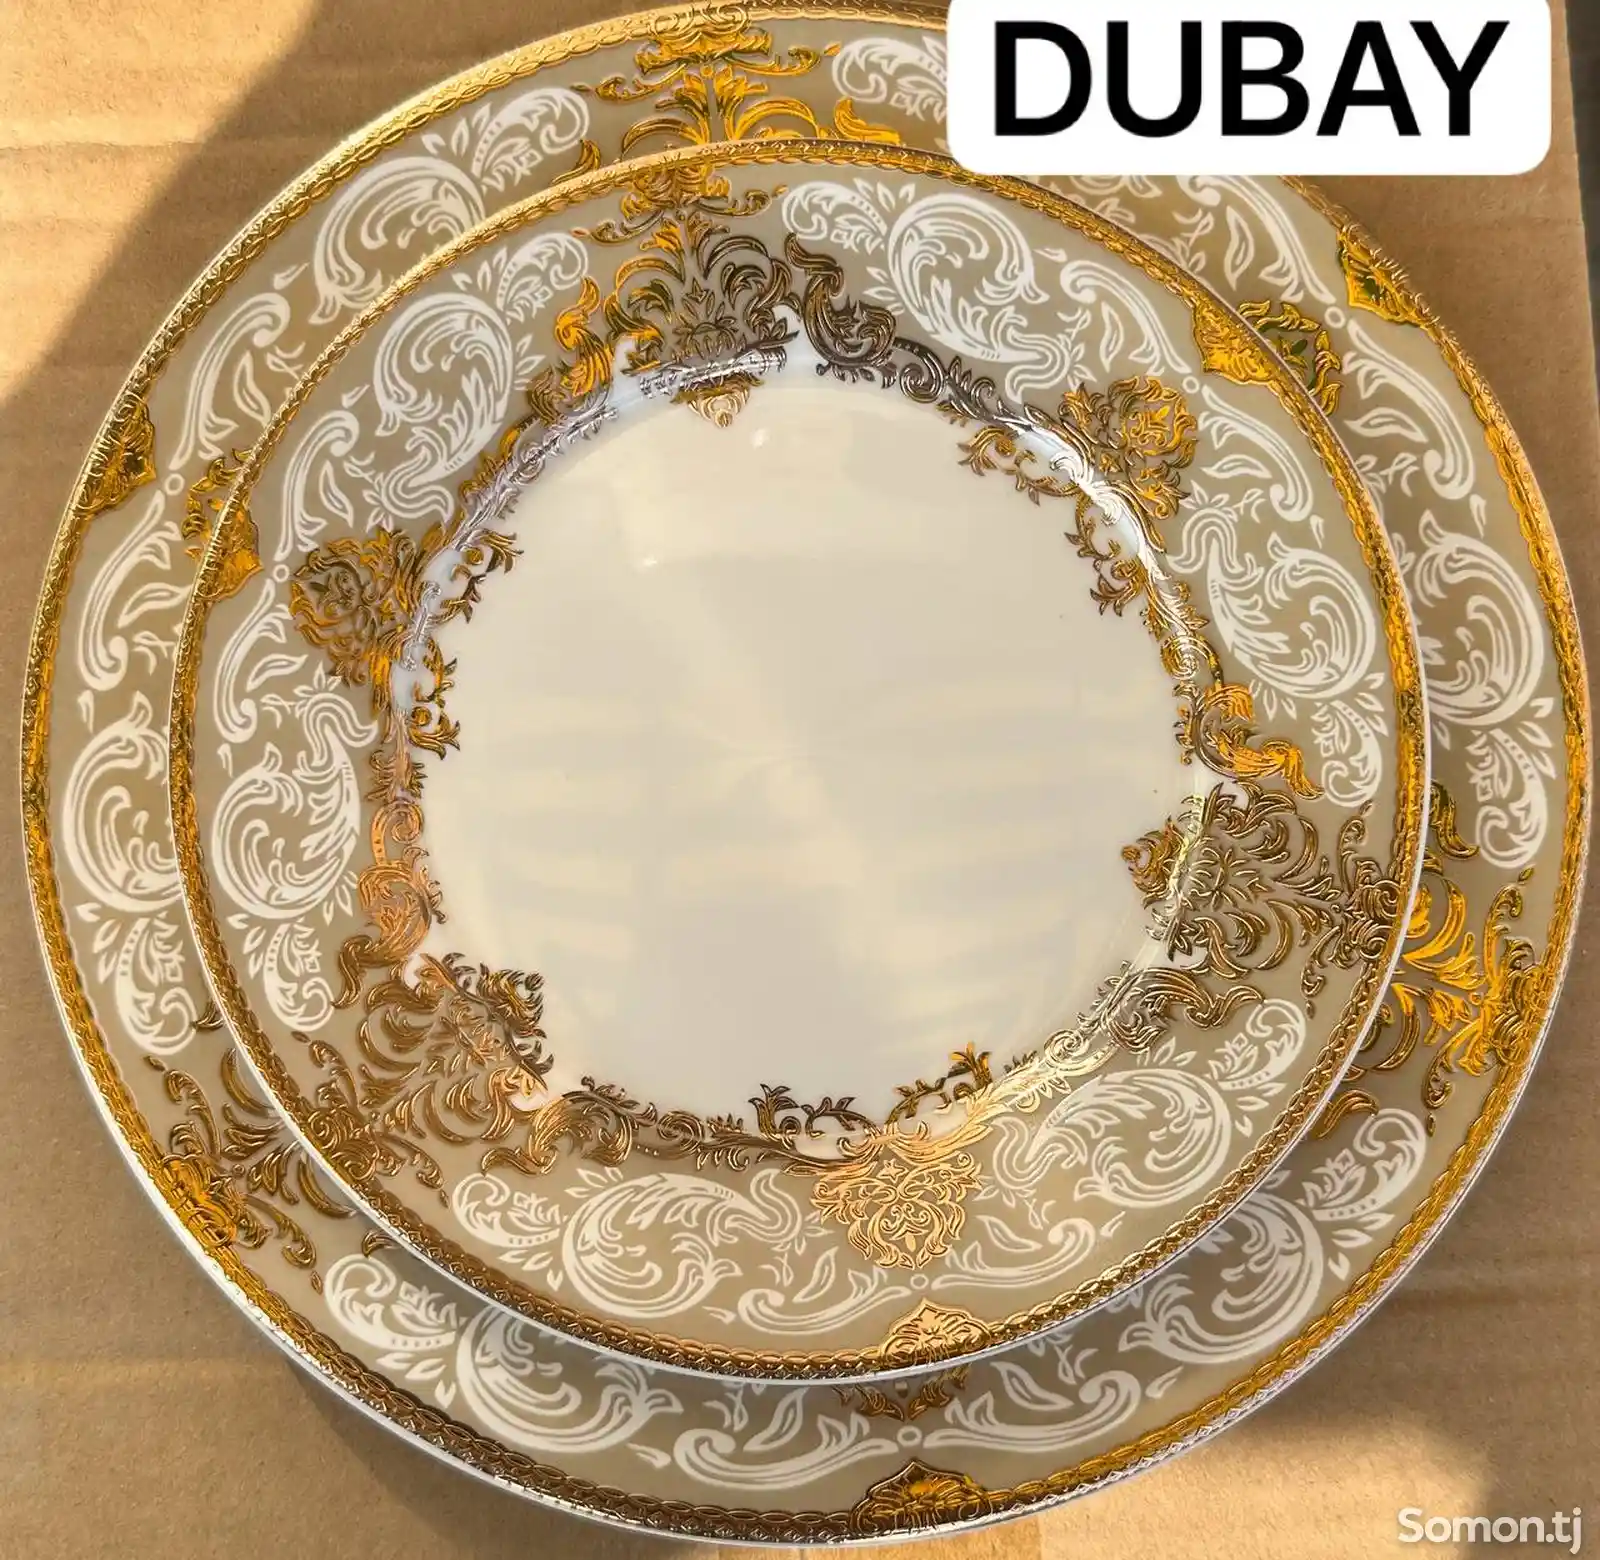 Набор посуды Dubay-07 комплект 6-7